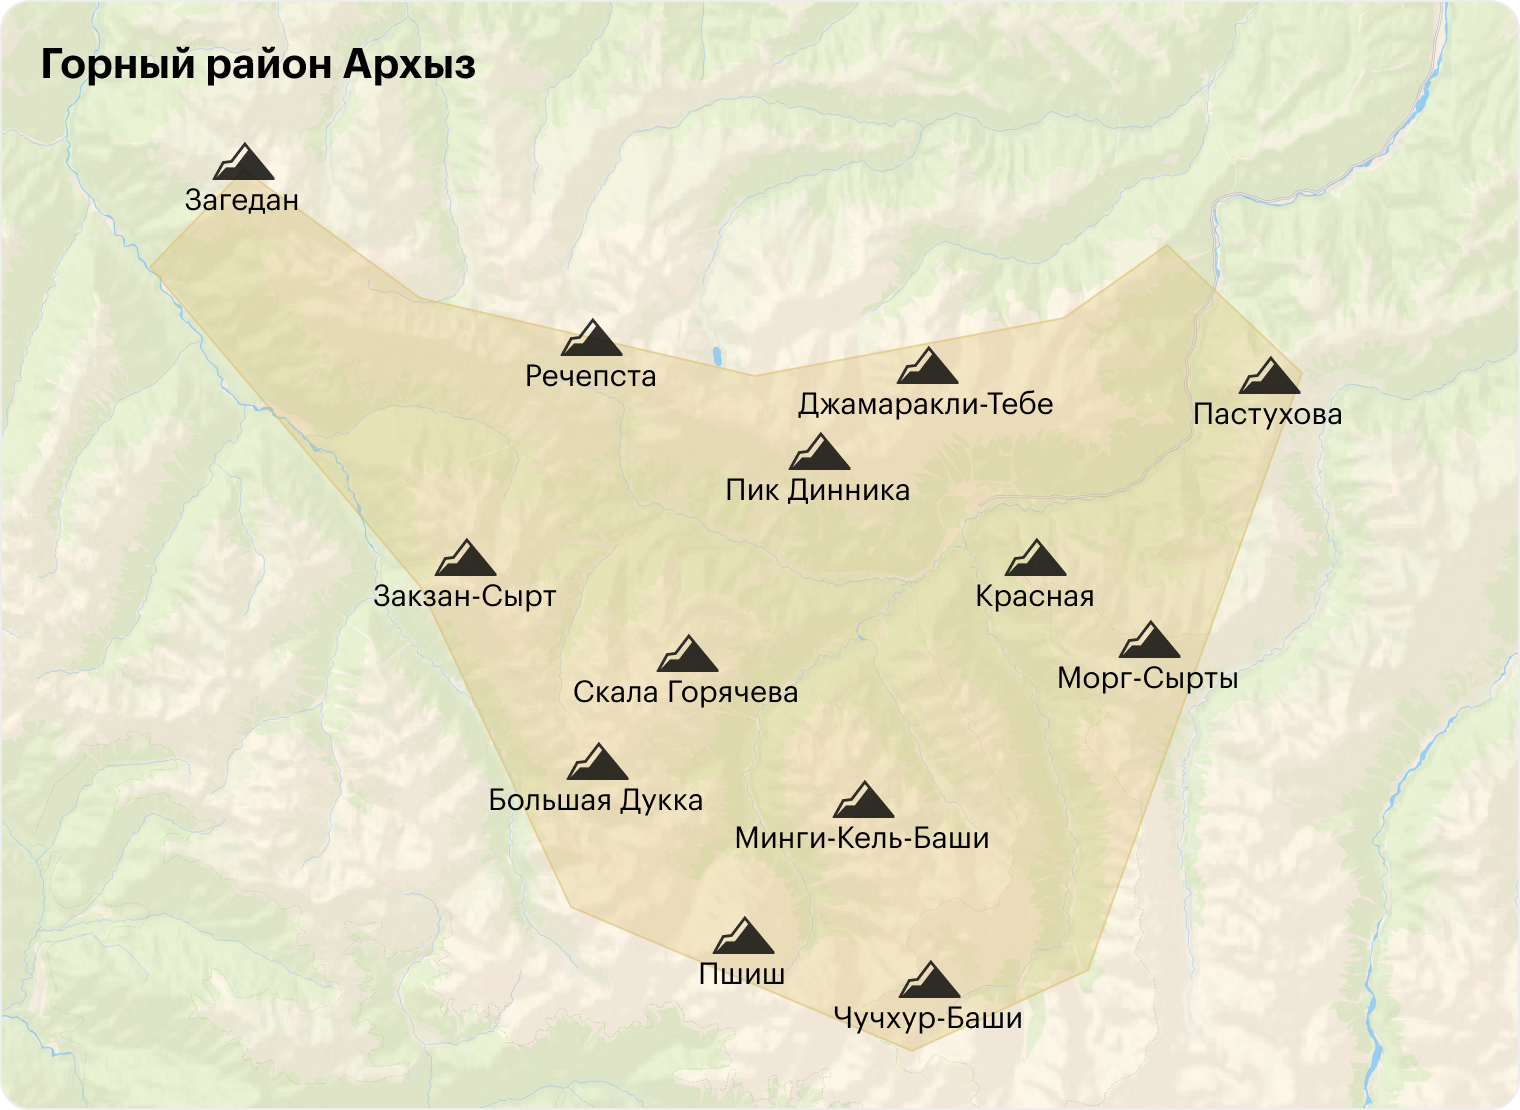 Горный район Архыз расположен между Главным Кавказским хребтом на юге, хребтами Абишира-Ахуба на севере, Аркасара на западе и Ужум на востоке